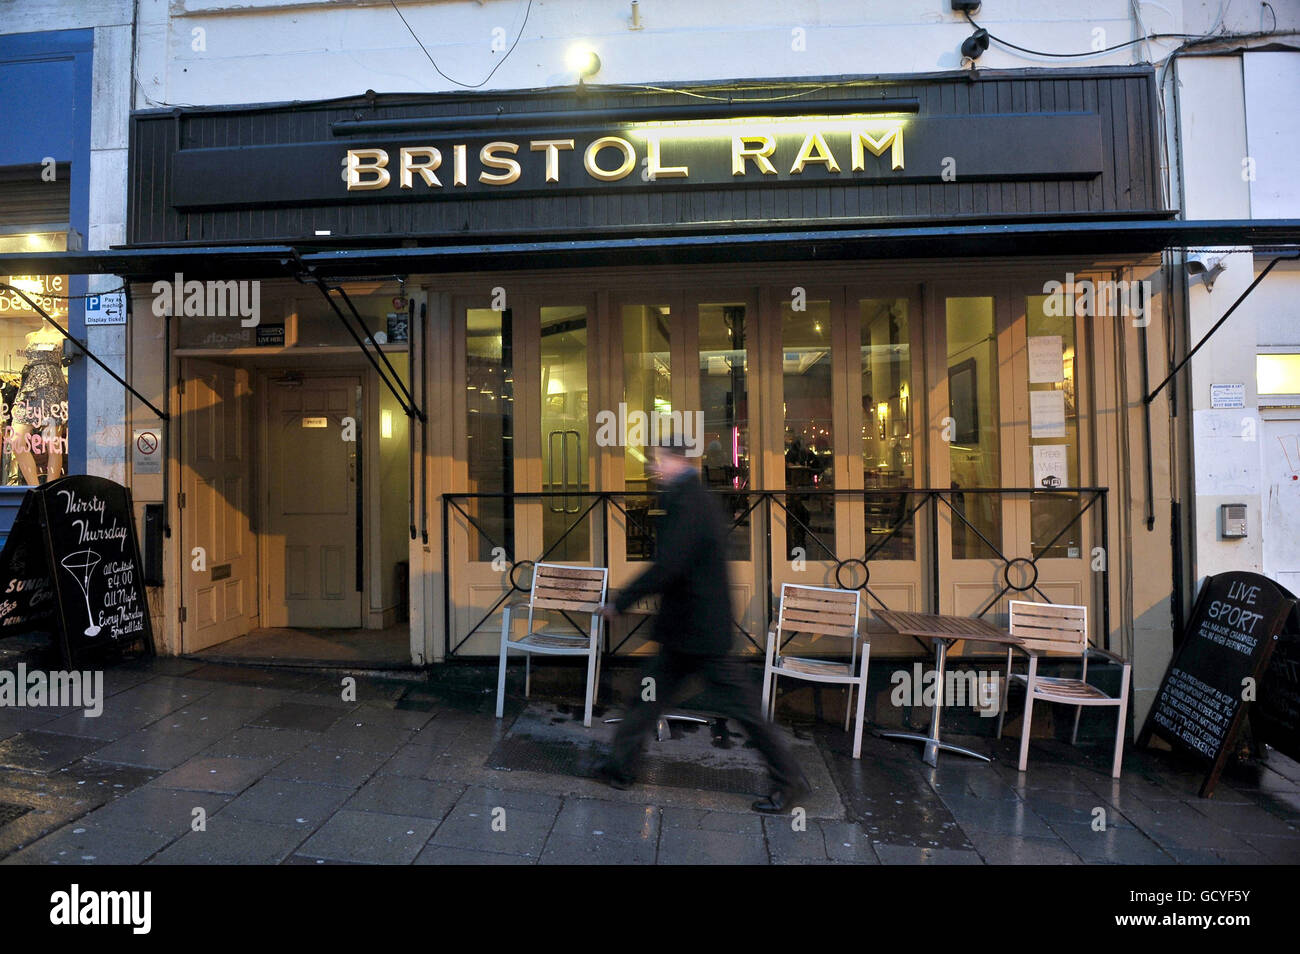 Una vista generale del pub Bristol RAM su Park Street, vicino a Clifton, Bristol, dove la polizia ha messo in su manifesti che richiedono informazioni sull'assassinio di Joanna Yeates. Foto Stock